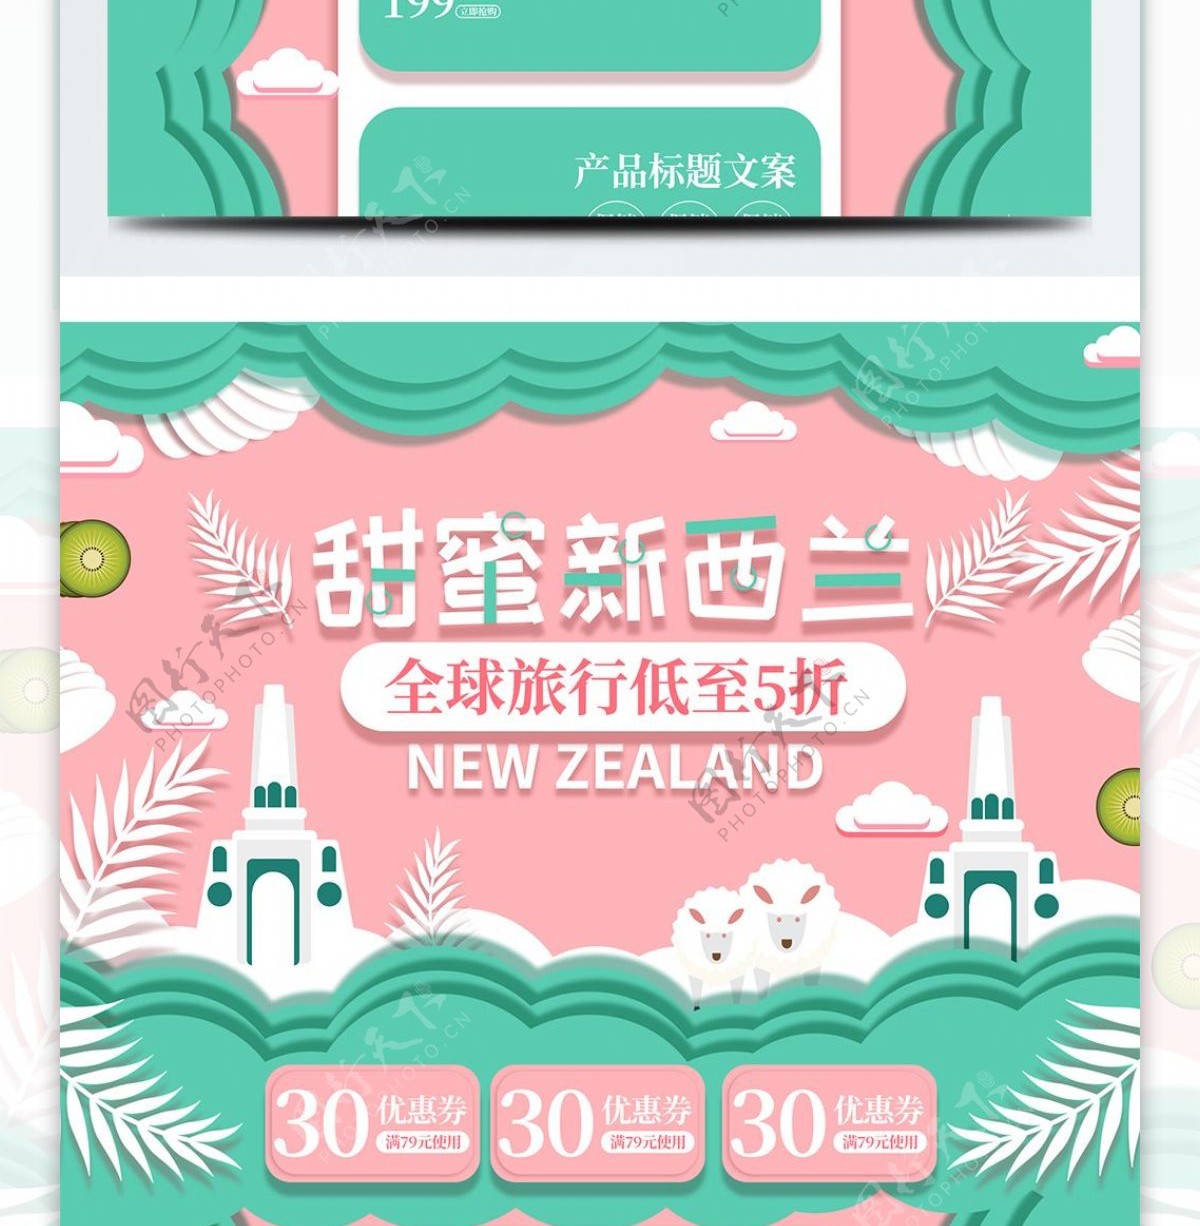 马卡龙甜蜜新西兰剪纸立体电商首页模板促销